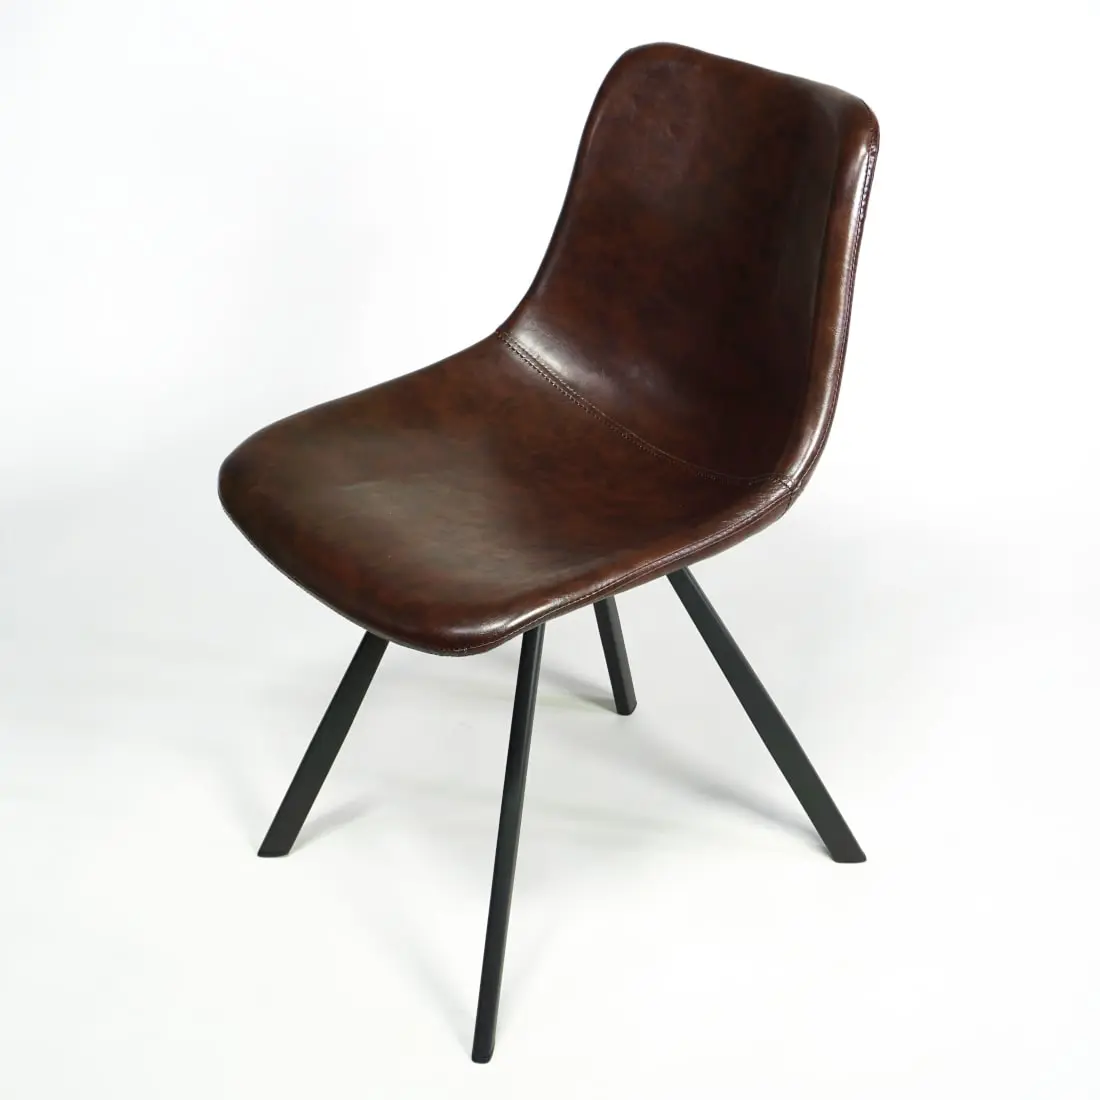 Klassischer Vintage-Retro-Stuhl passend zum Esszimmer- & Besprechungstisch, braun gepolstert